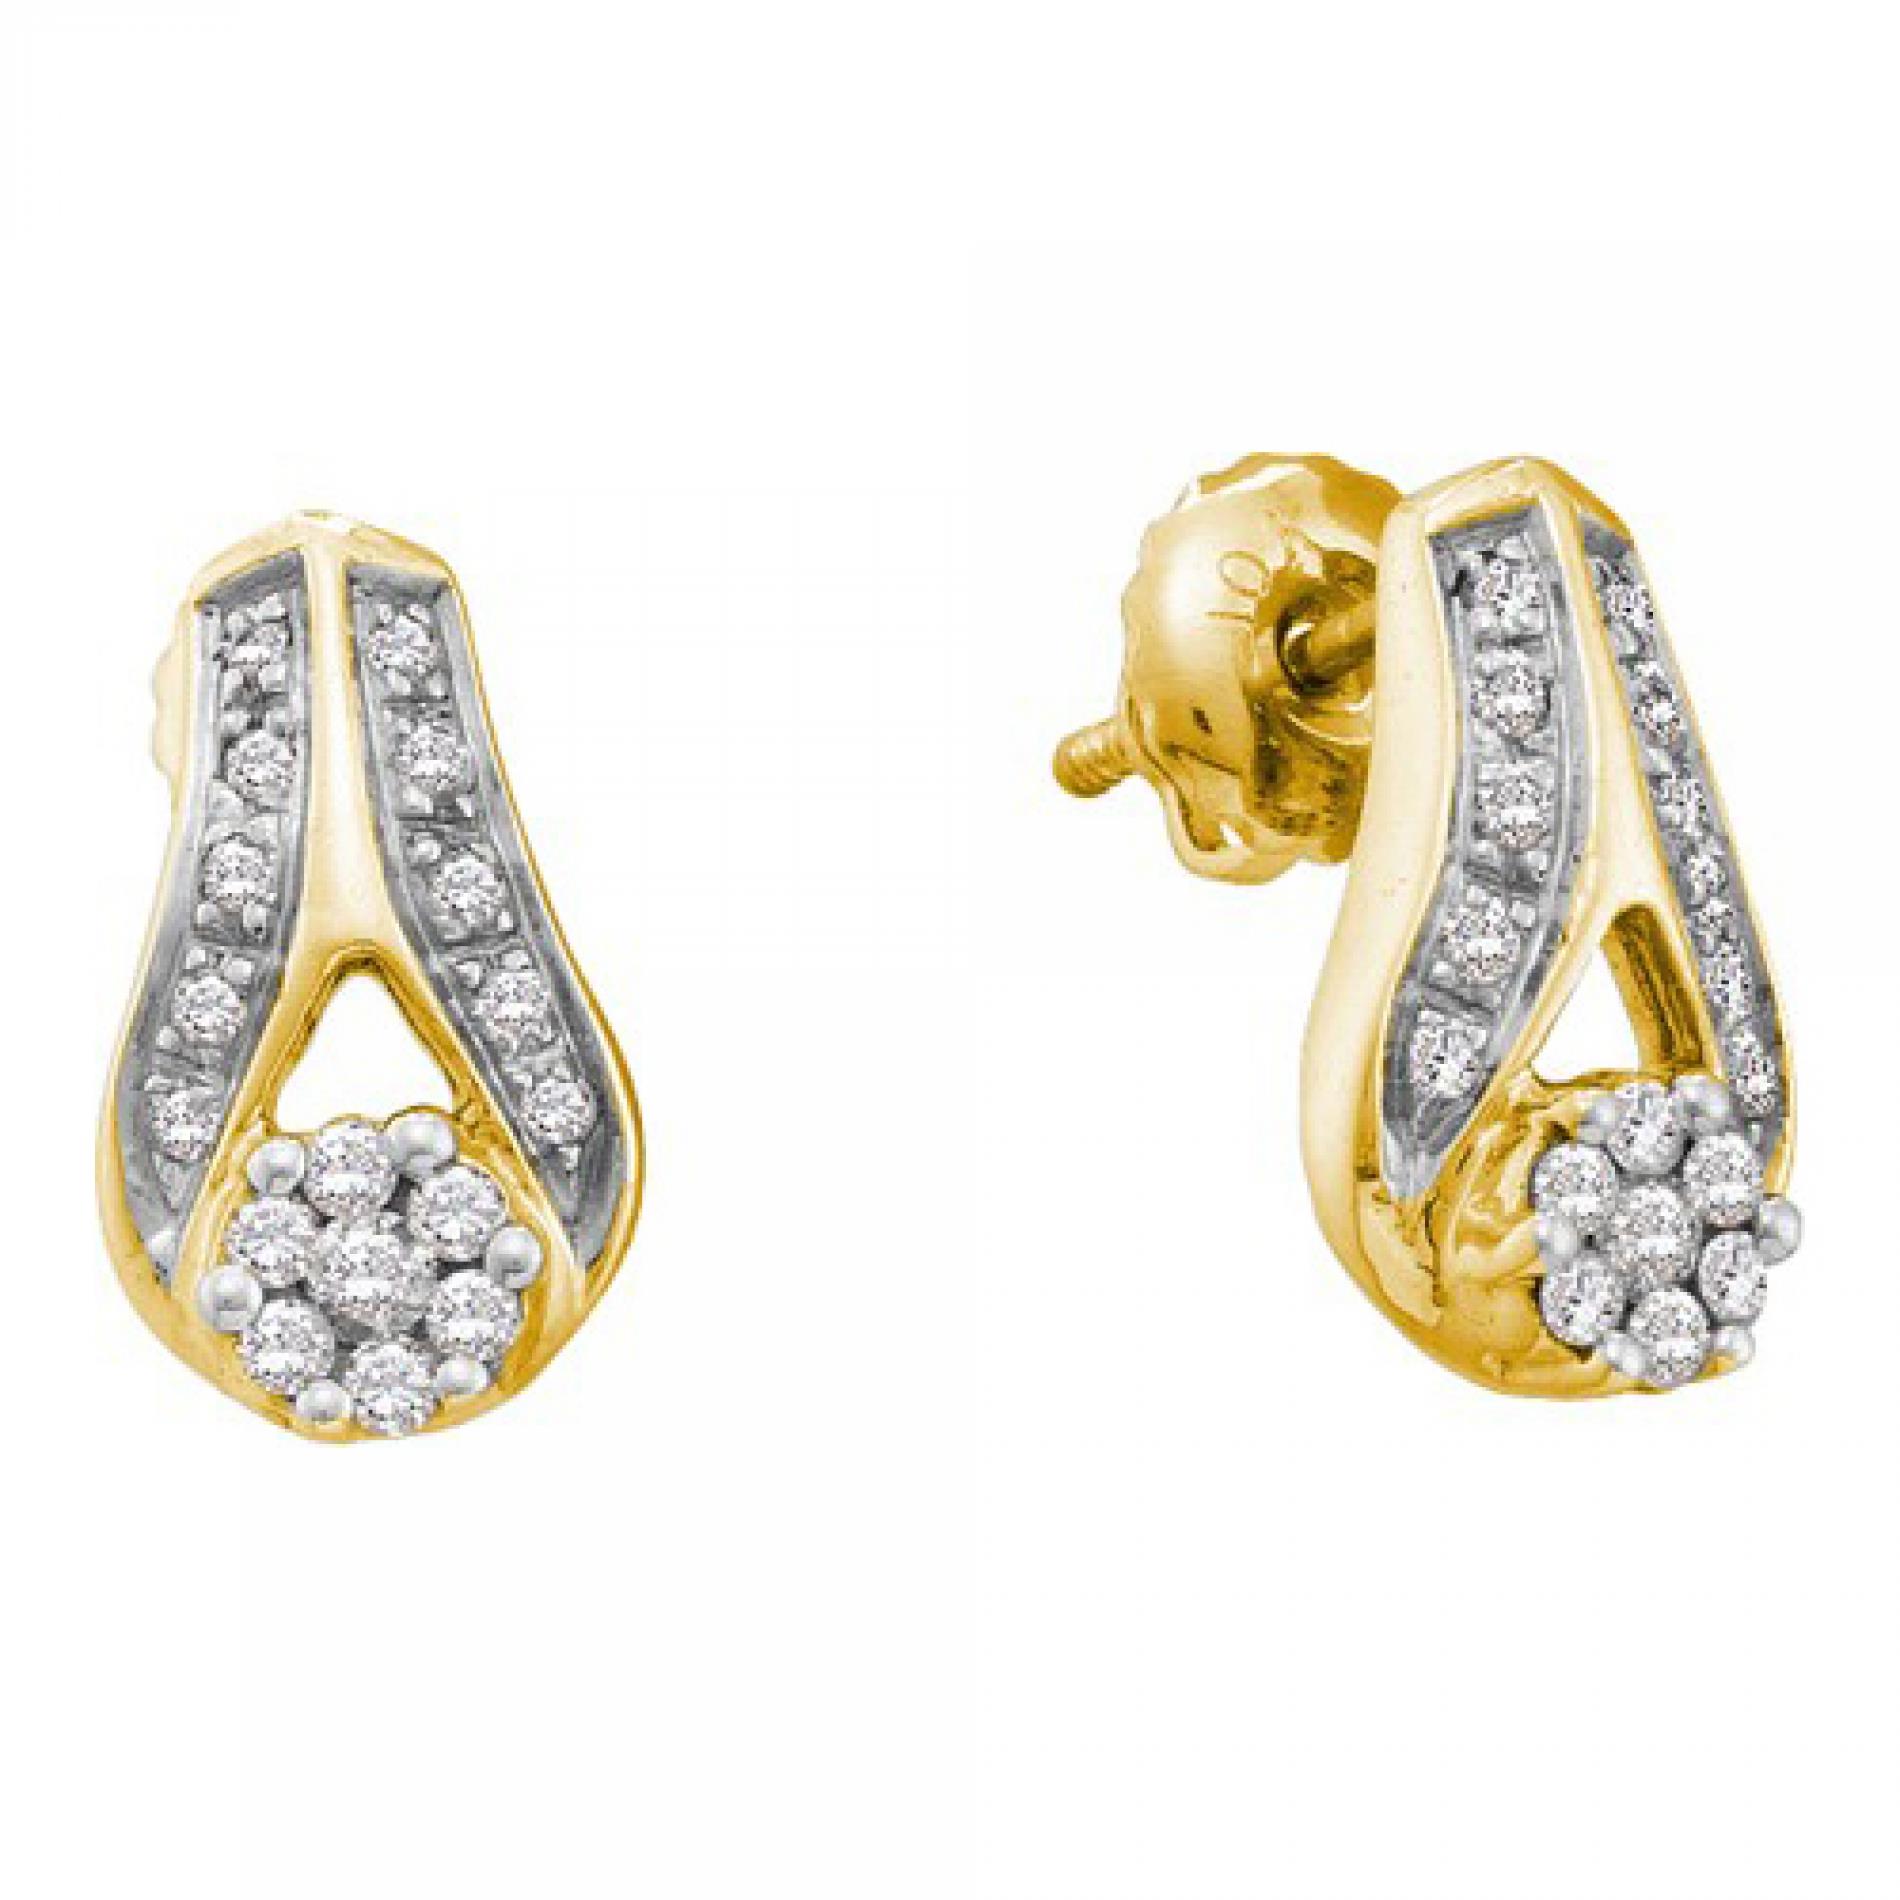 14k Yellow Gold 0.25 CTW Diamond Flower Cluster Stud Earrings  (He) 2.239 gram    #556 19693